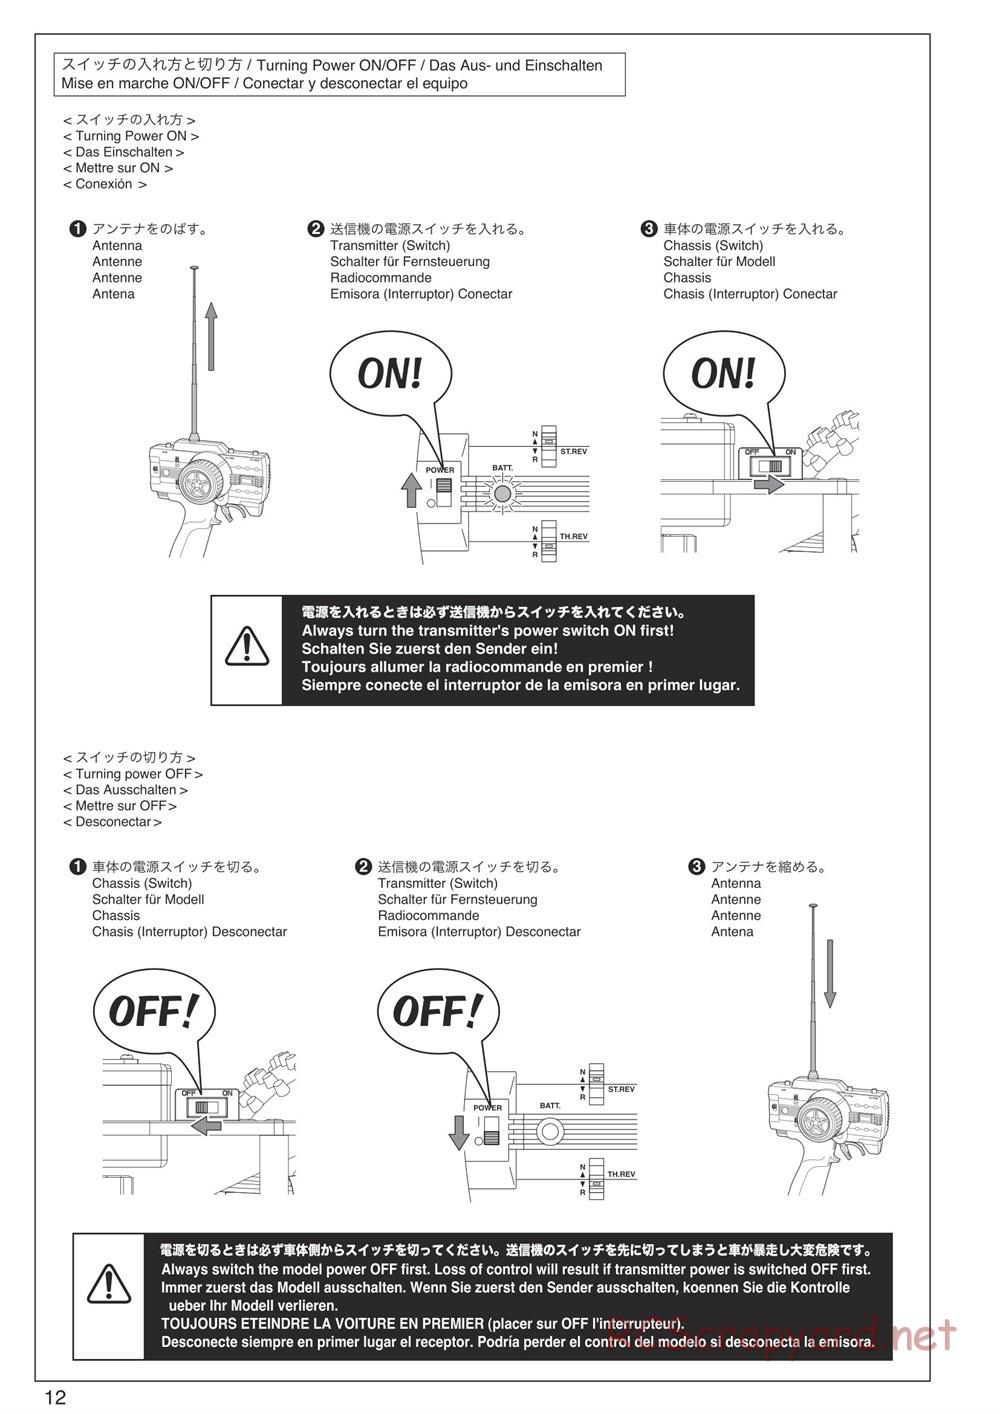 Kyosho - DBX-VE - Manual - Page 12